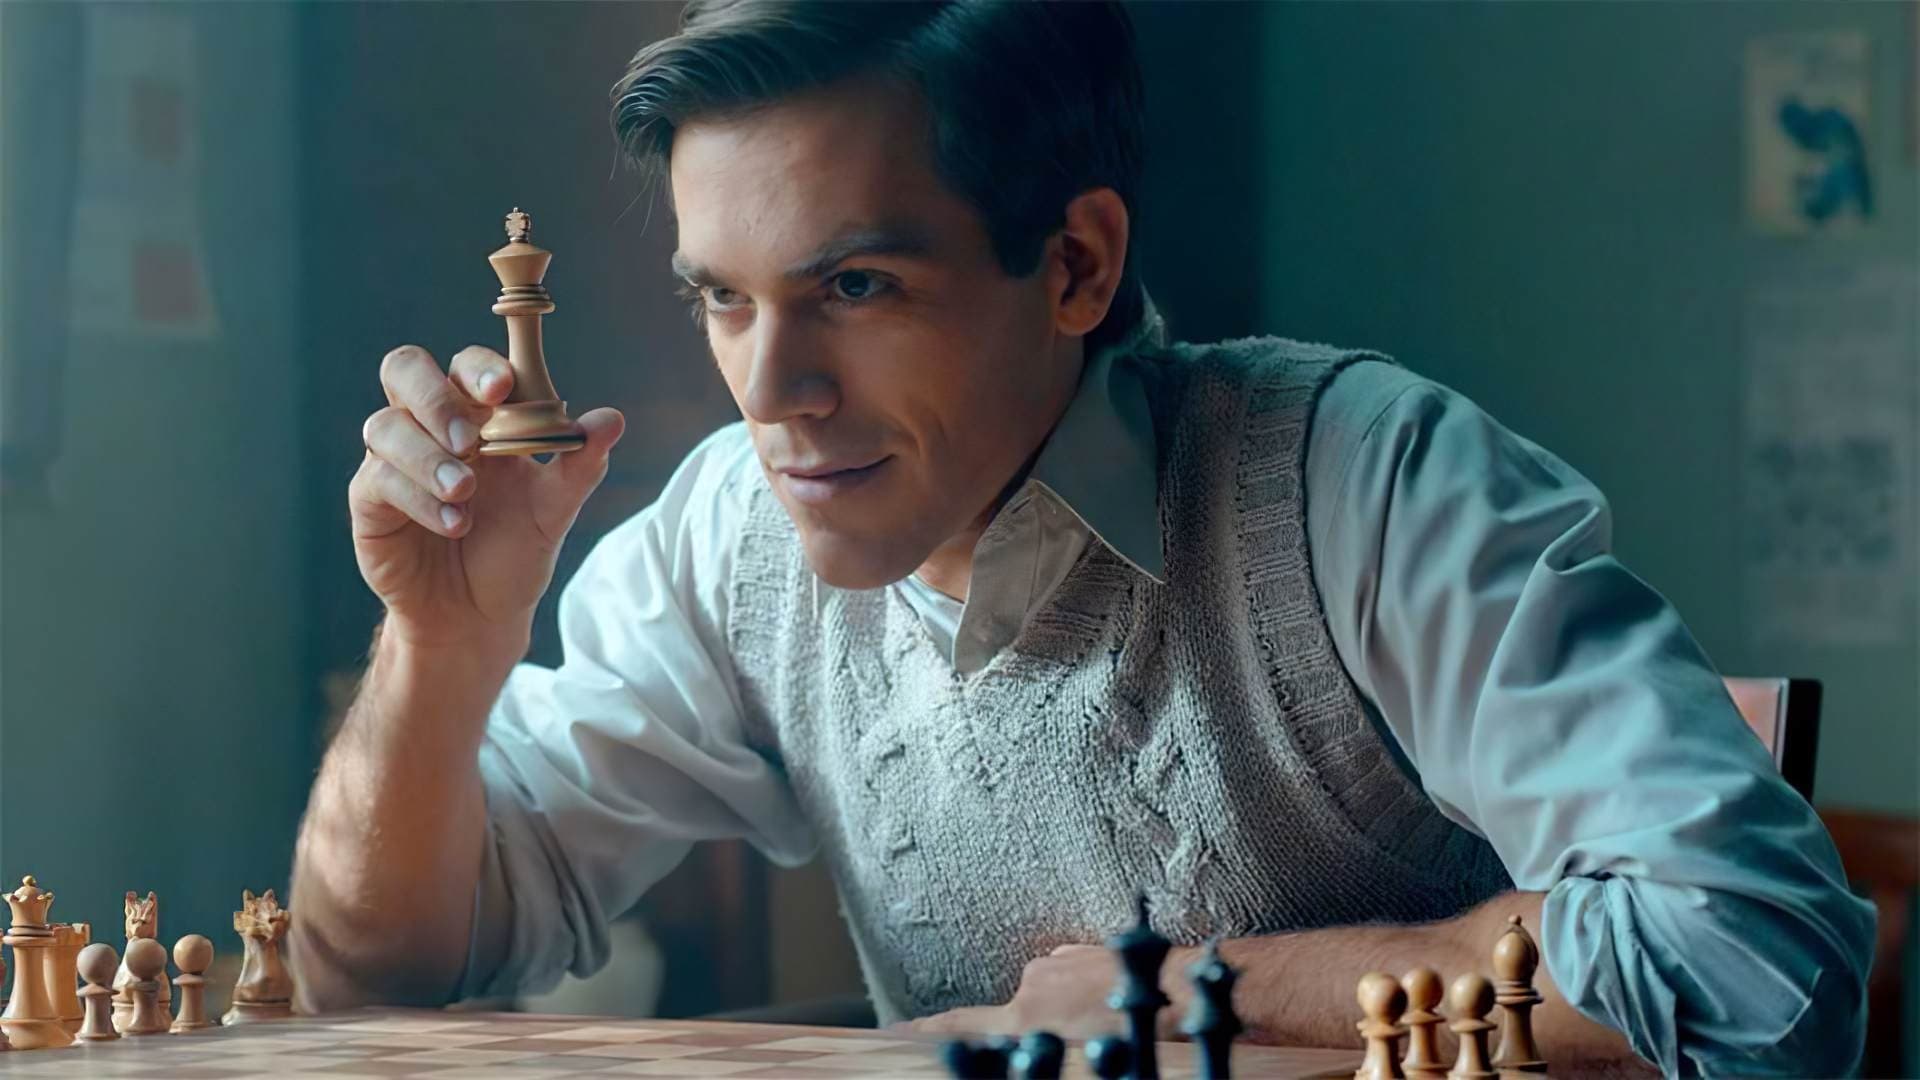 Watch The Chessplayer (2017) Full Movie Online - Plex